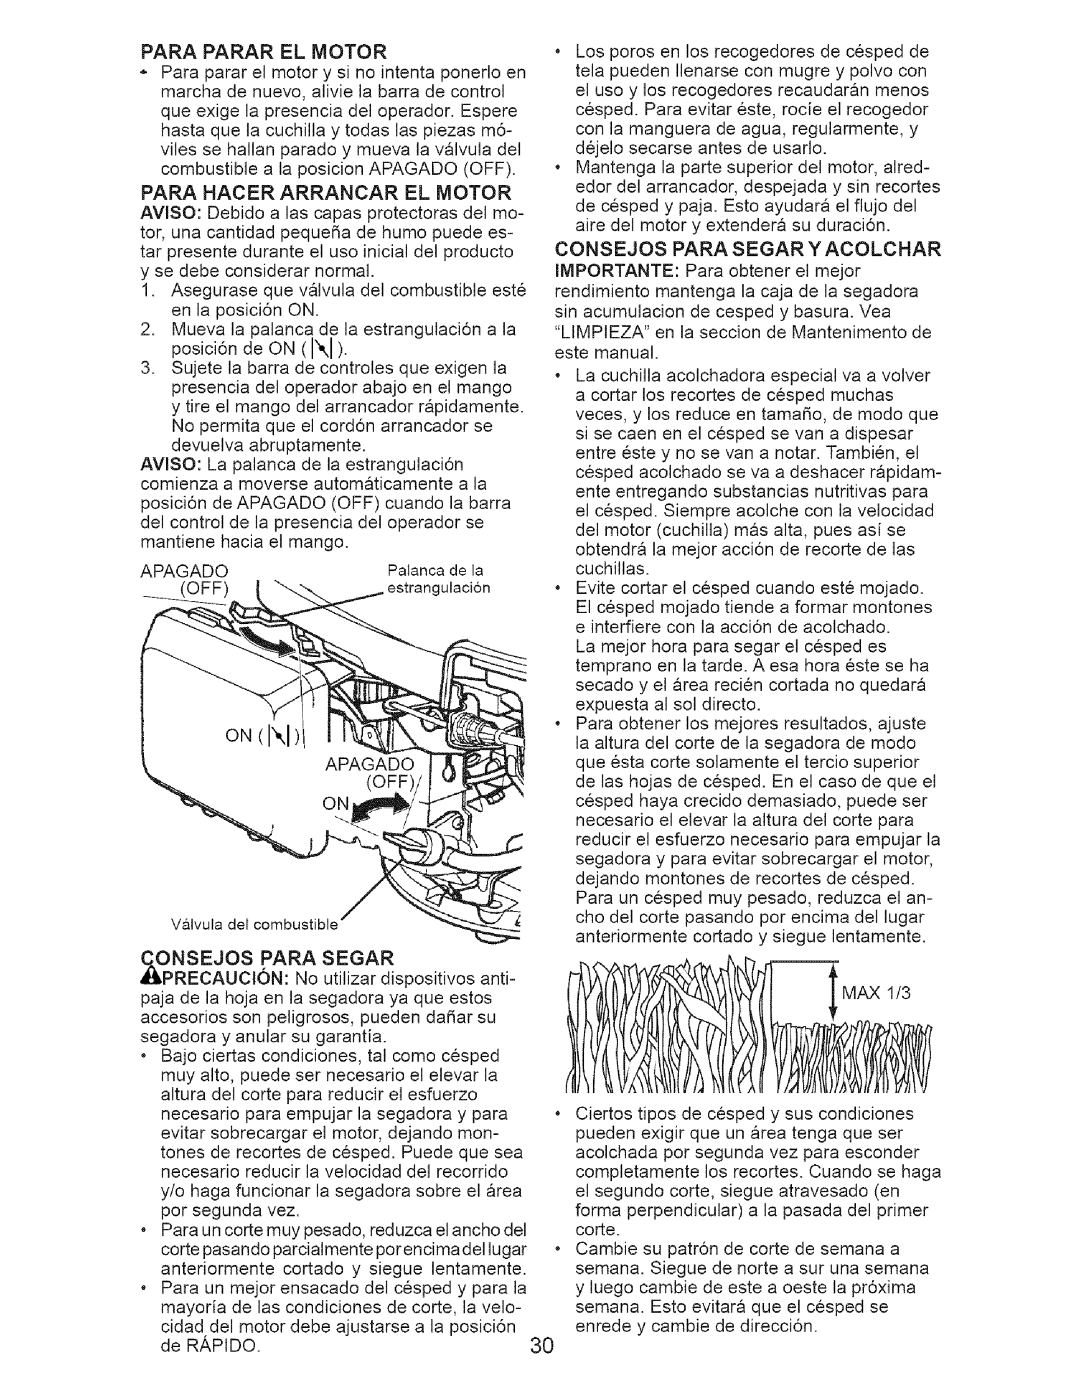 Craftsman 917.371812 owner manual Para Parar El Motor, Para Hacer Arrancar El Motor 